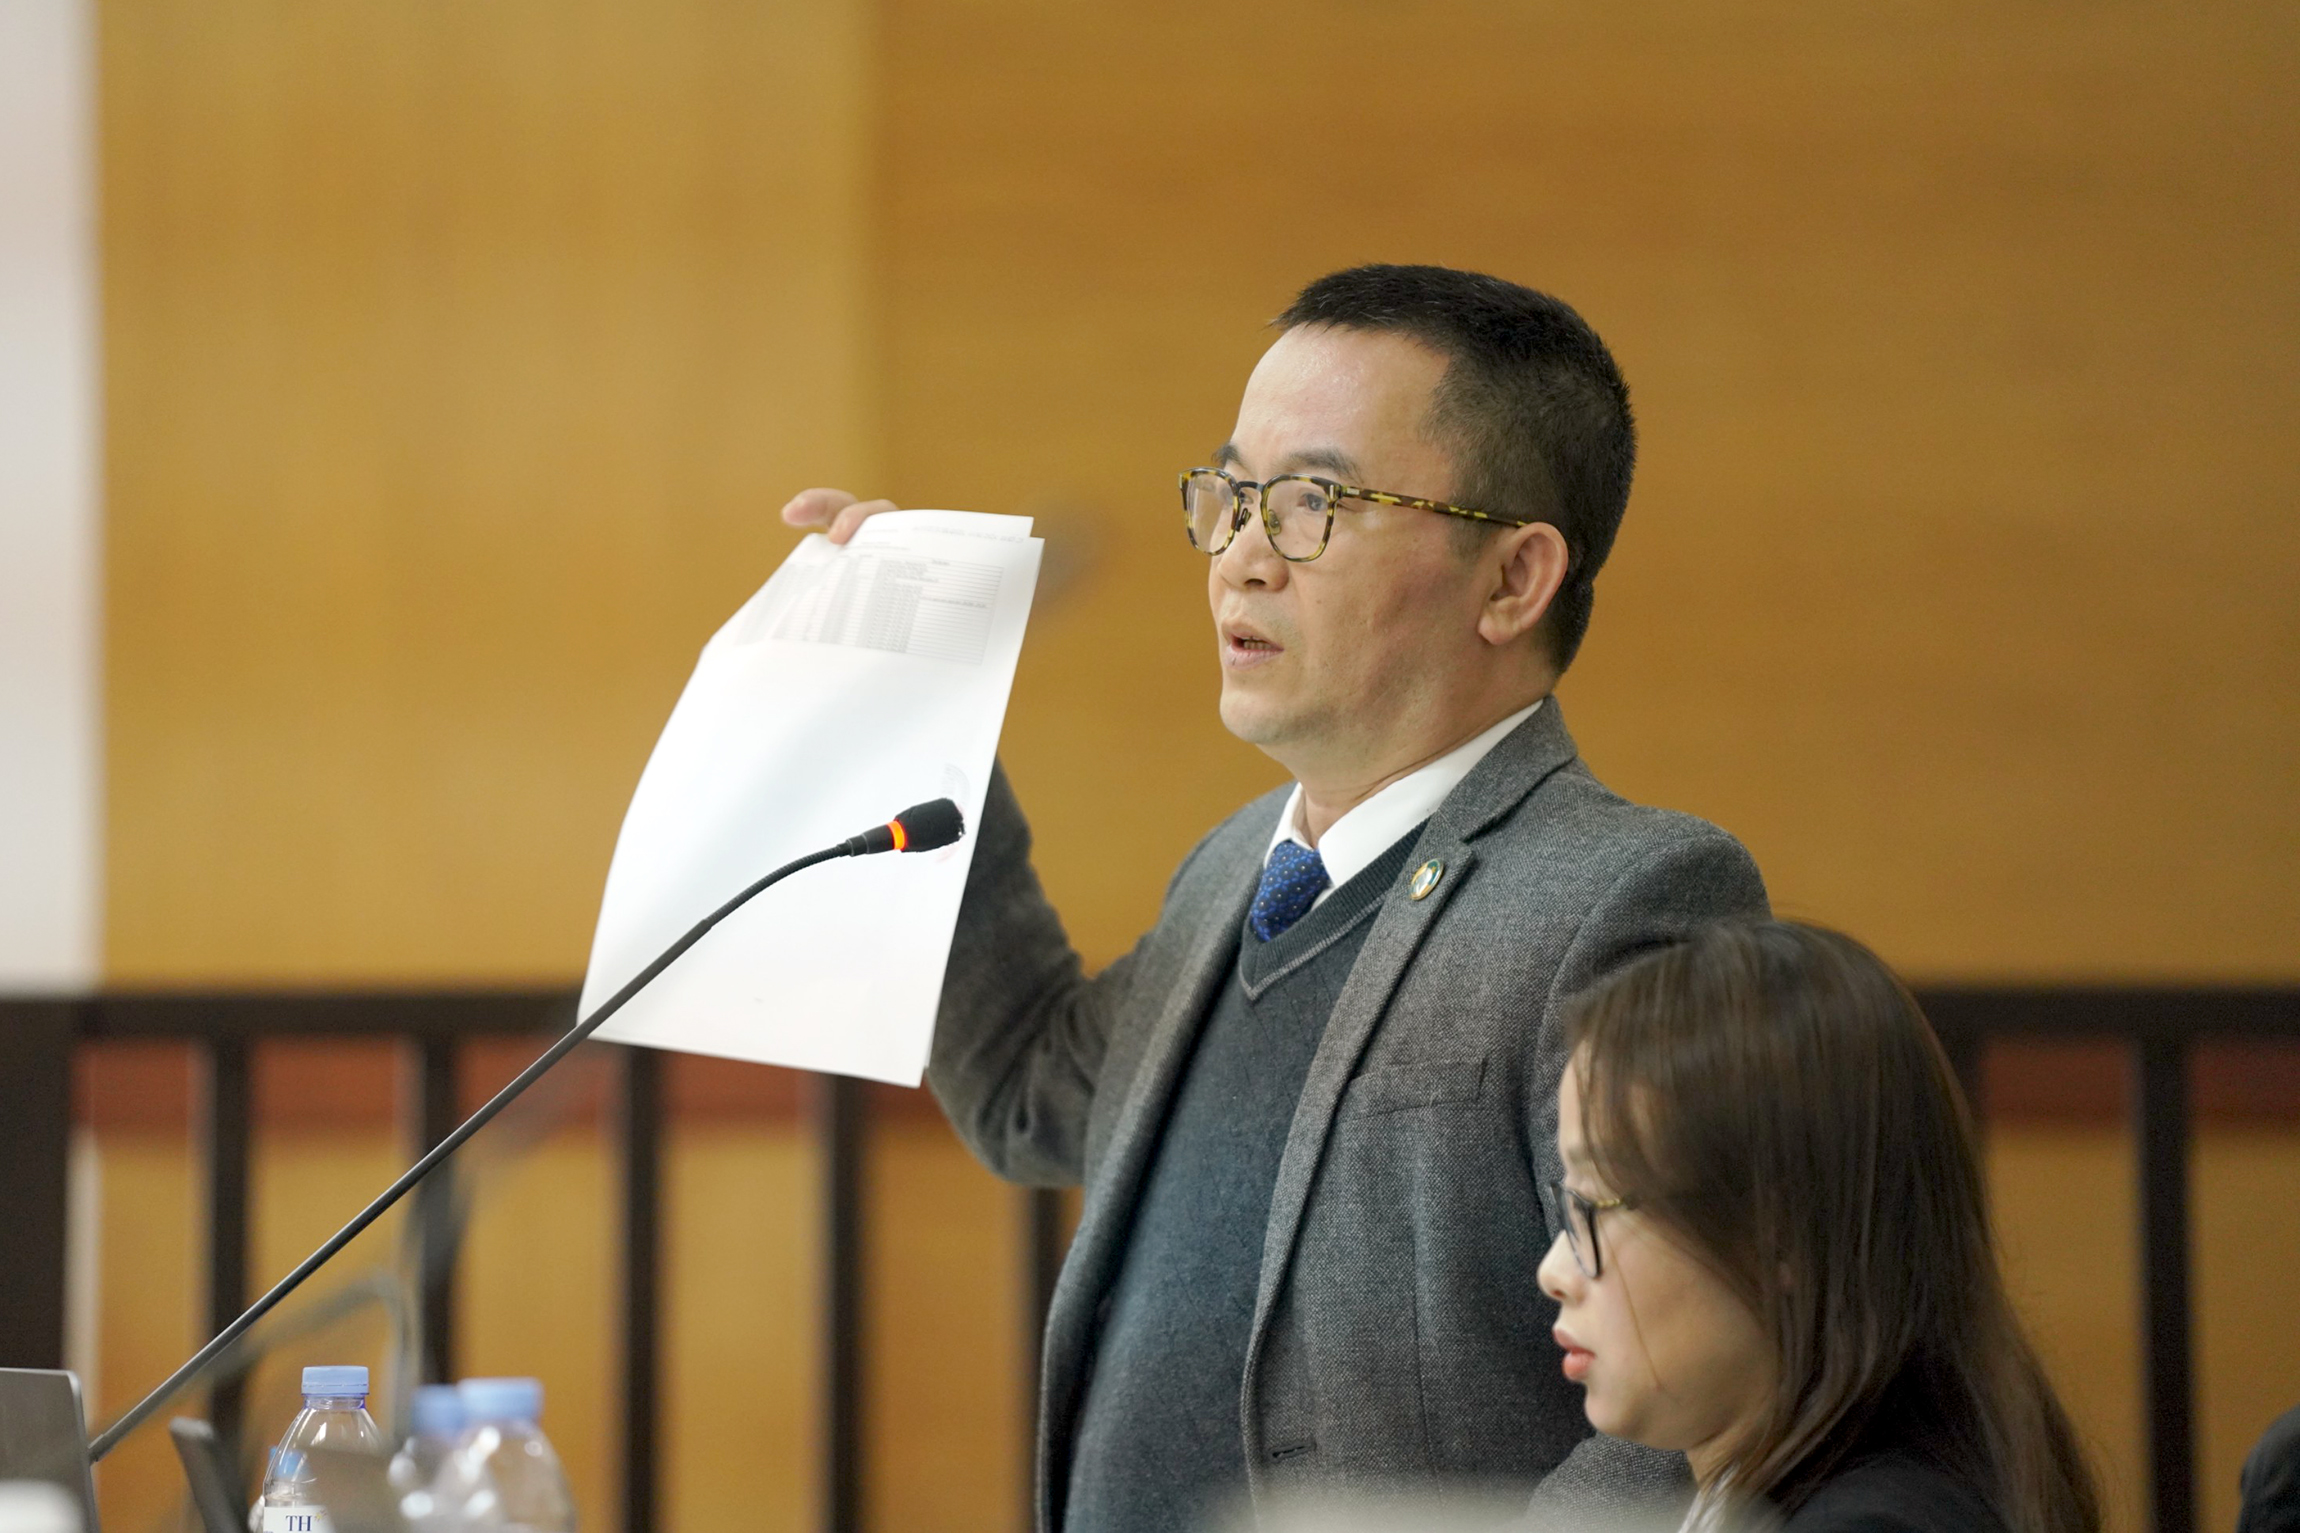 Bị cáo Trần Hùng nói "sẽ theo đuổi vụ án để bảo vệ danh dự" vẫn bị tuyên y án 9 năm tù- Ảnh 2.